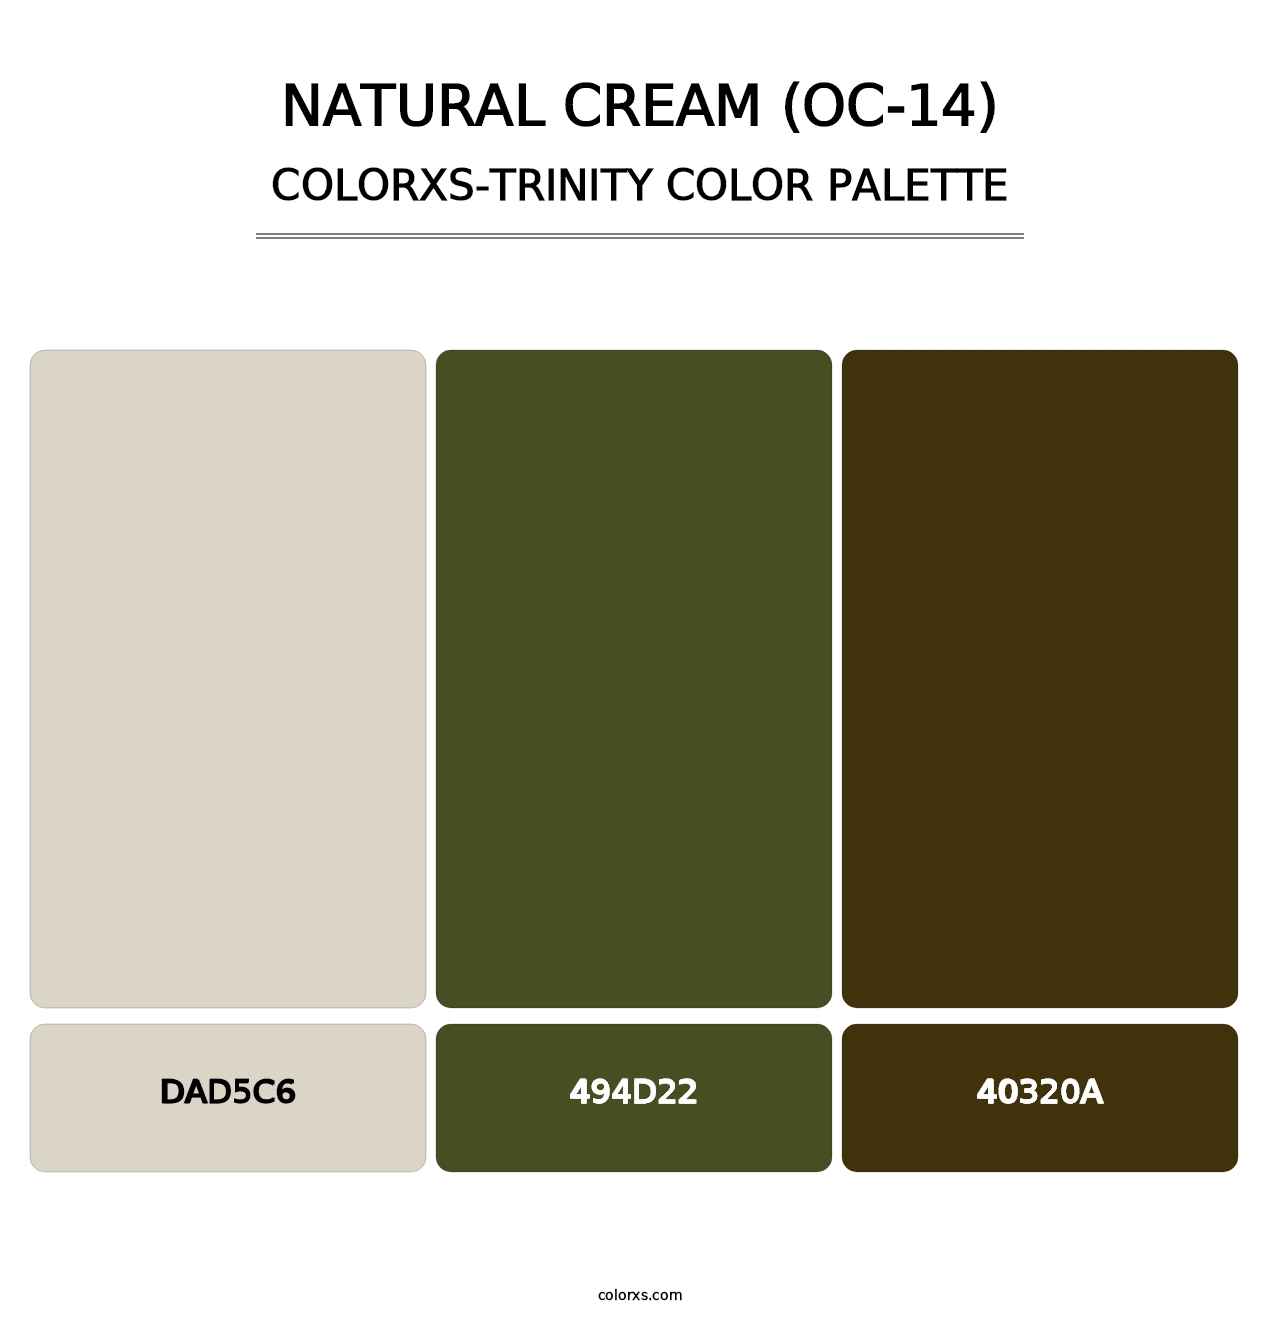 Natural Cream (OC-14) - Colorxs Trinity Palette